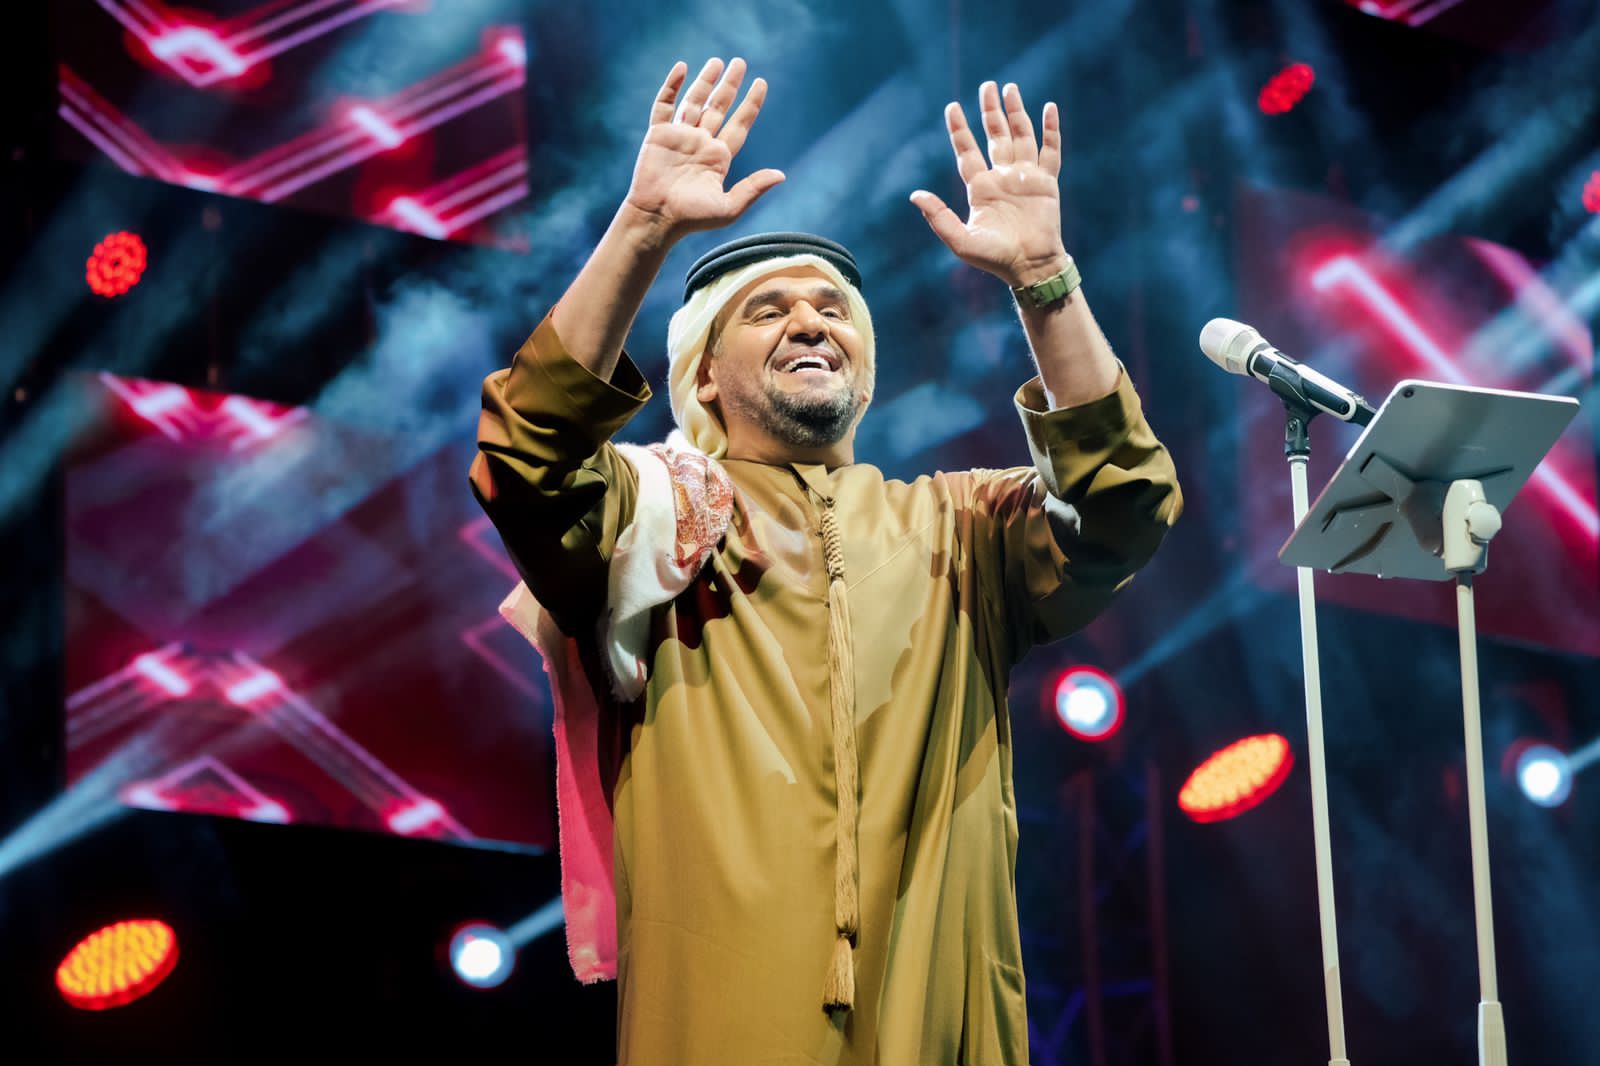 حسين الجسمي يستقبل العام الجديد 2022 في أبوظبي بأمنيات المحبة والسلام)